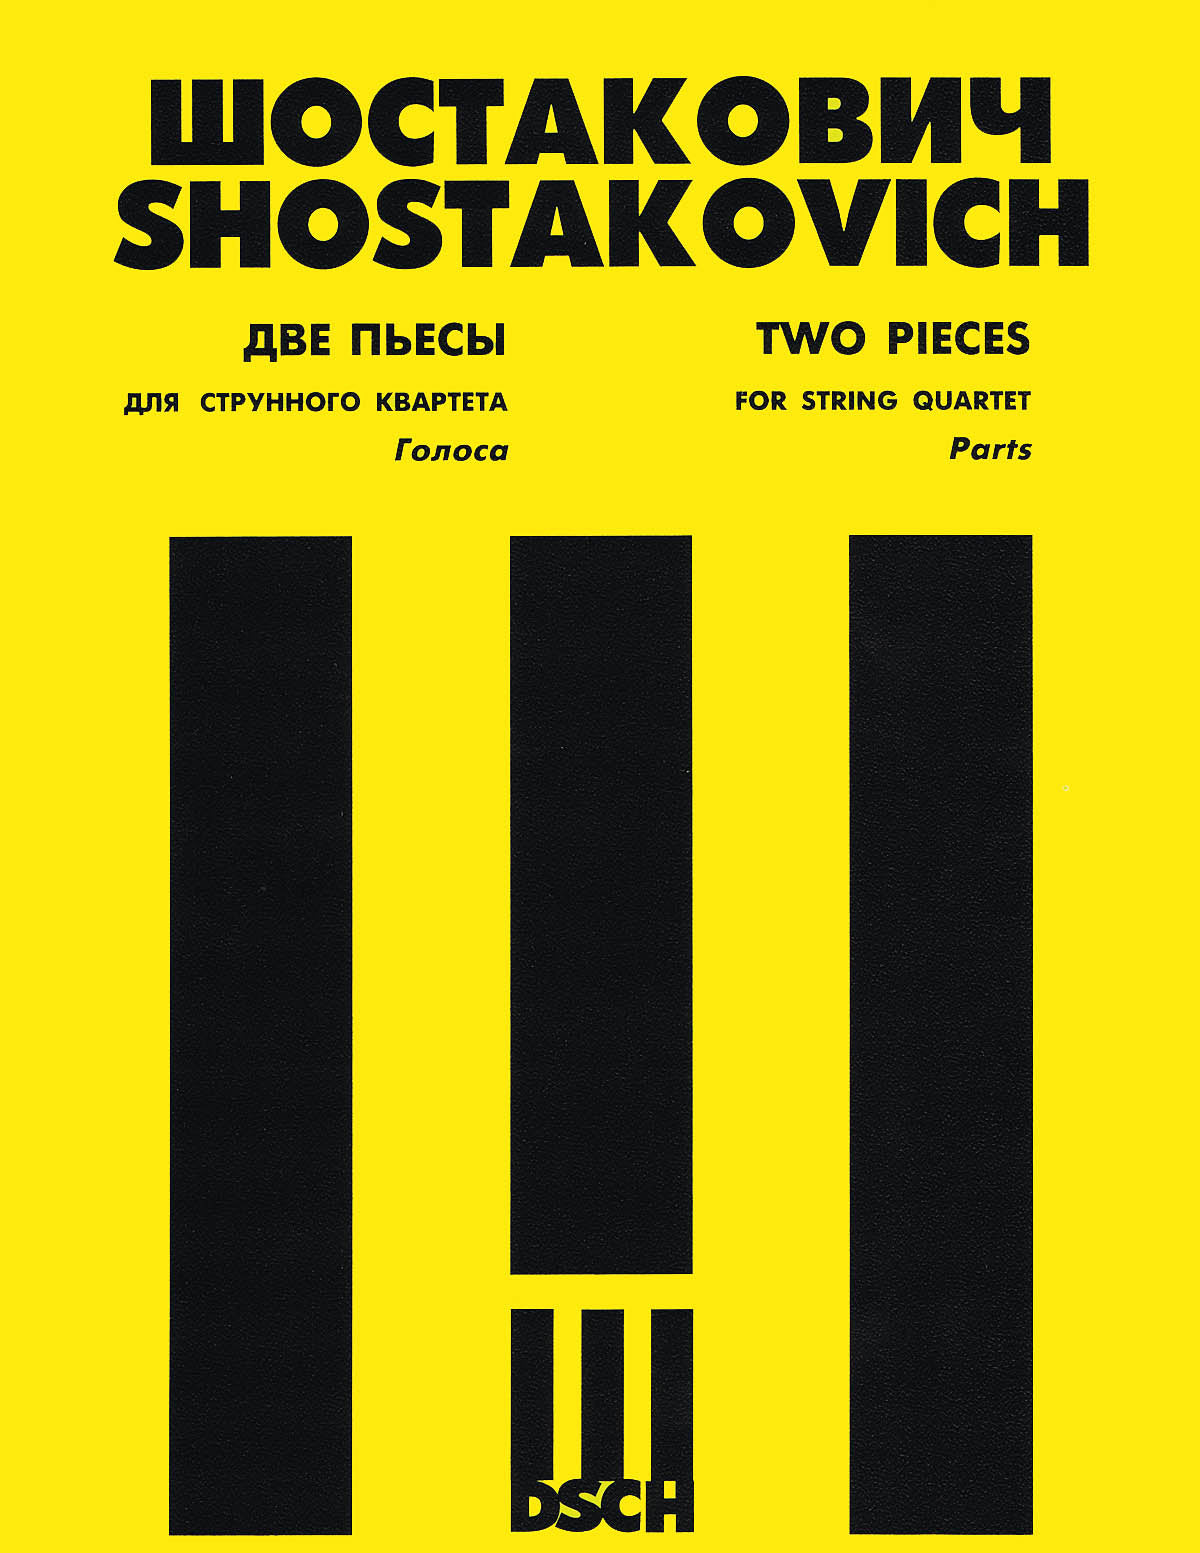 Shostakovich: 2 Pieces for String Quartet (Elegy and Polka)